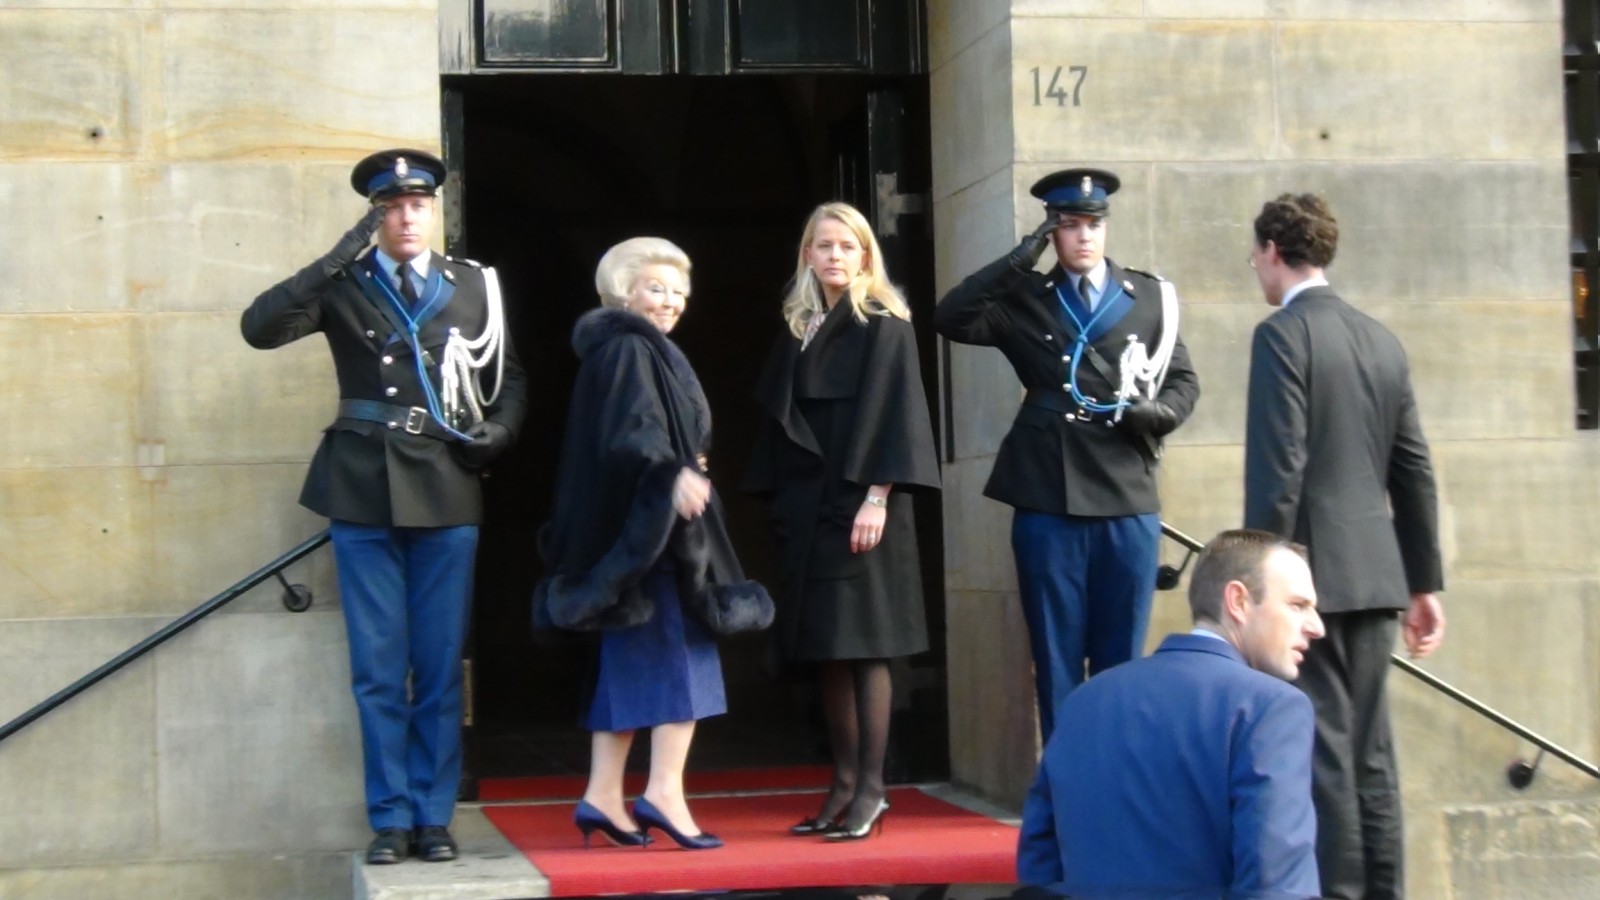 Prinses Mabel was vandaag voor het eerst sinds het ongeluk van prins Friso aanwezig zijn bij een officiële gelegenheid in Nederland. Ze is samen met koningin Beatrix en andere leden van de koninklijke familie aanwezig bij de uitreiking van de Prins Claus 